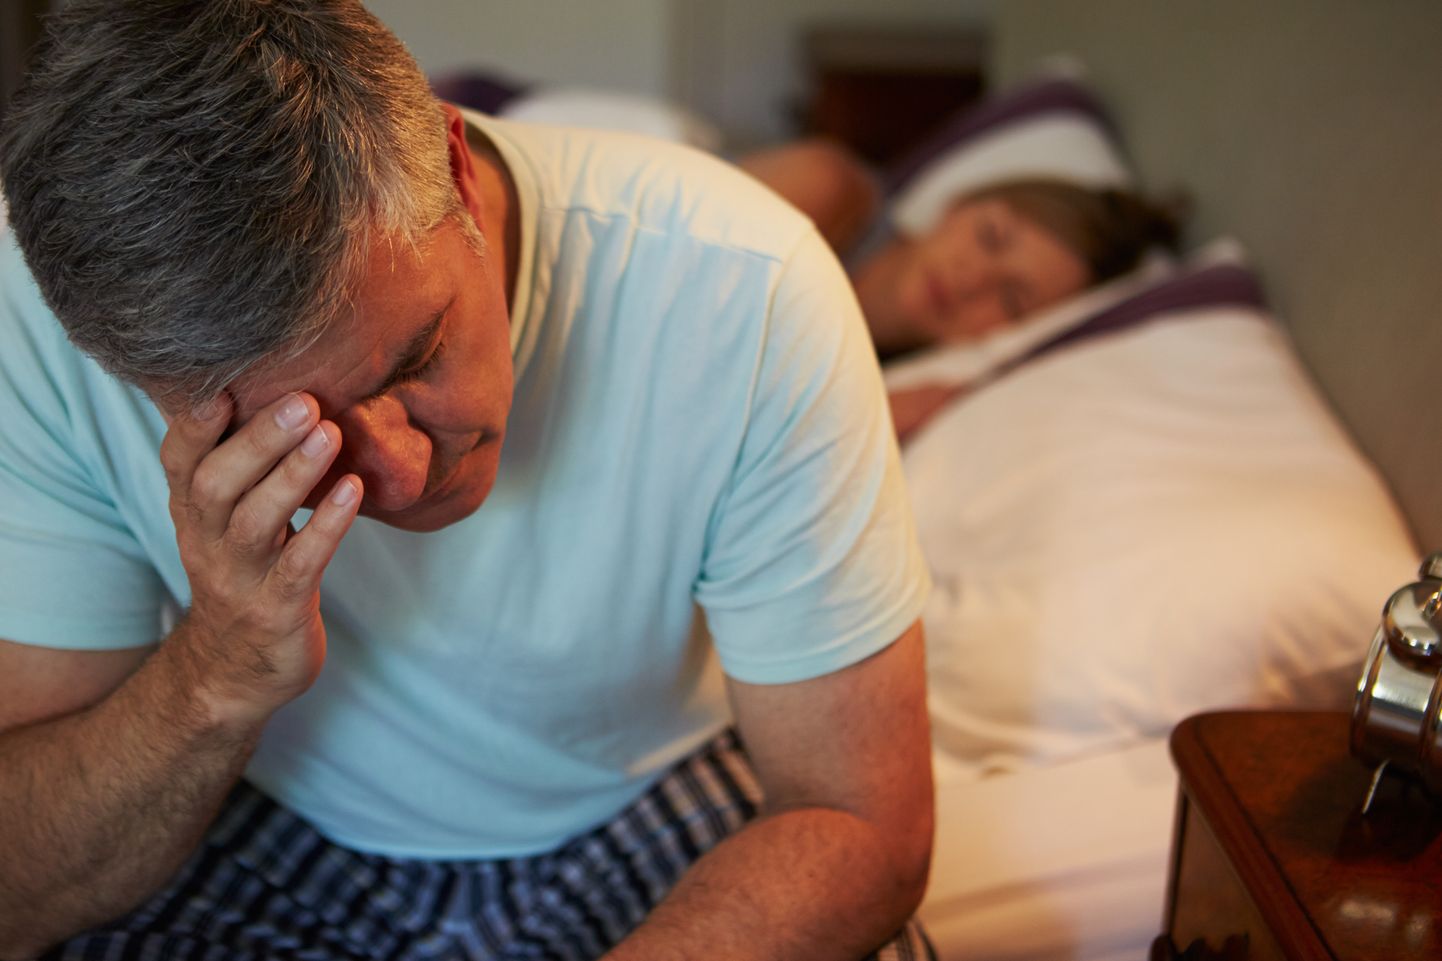 Pikemalt kestva unetuse põhjus tuleks välja selgitada, et see ei muutuks krooniliseks ja kogu tervist kahjustavaks.